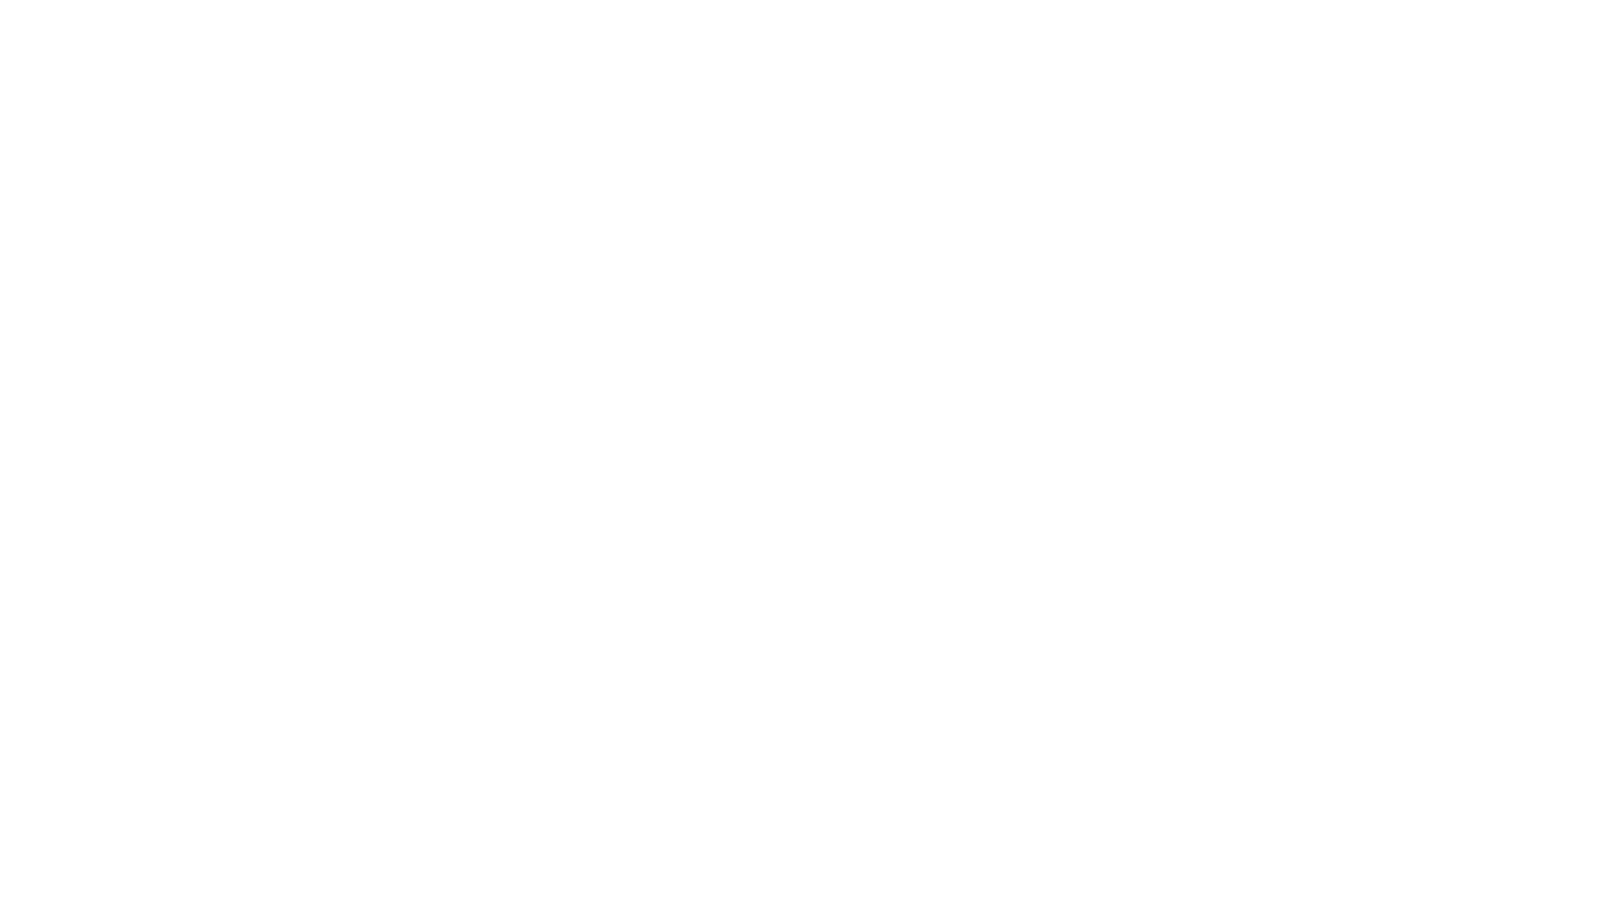 WEBINAR SERIAL INTEGRASI ILMU-AGAMA ~ Seri Islam, Ilmu Ekonomi, dan Bisnis

Sesi 4
🔅 "Paradigma Transformasional: Jalan Ketiga Aksiologi Ekonomi Islam"

Bersama:
🎙️ Muhammad Sholihin (Mahasiswa Doktoral PIIH SPs UGM & Dosen IAIN Ceurup, Rejang Lebang)

Moderator:
🎤 Syahri Nurizki

📍Rabu, 27 September 2023
⏰Pukul 15.30 s.d. 17.30 WIB ( Bakda Salat Asar Wilayah Yogyakarta )

--------------------
Dipersembahkan oleh :
Masjid Kampus UGM

Didukung oleh :
Jama'ah Shalahuddin UGM
--------------------
Masjid Kampus UGM
📷 Instagram, Twitter :
@masjidkampusugm @ldkjsugm
🎥Youtube, Fanpage :
Masjid Kampus UGM